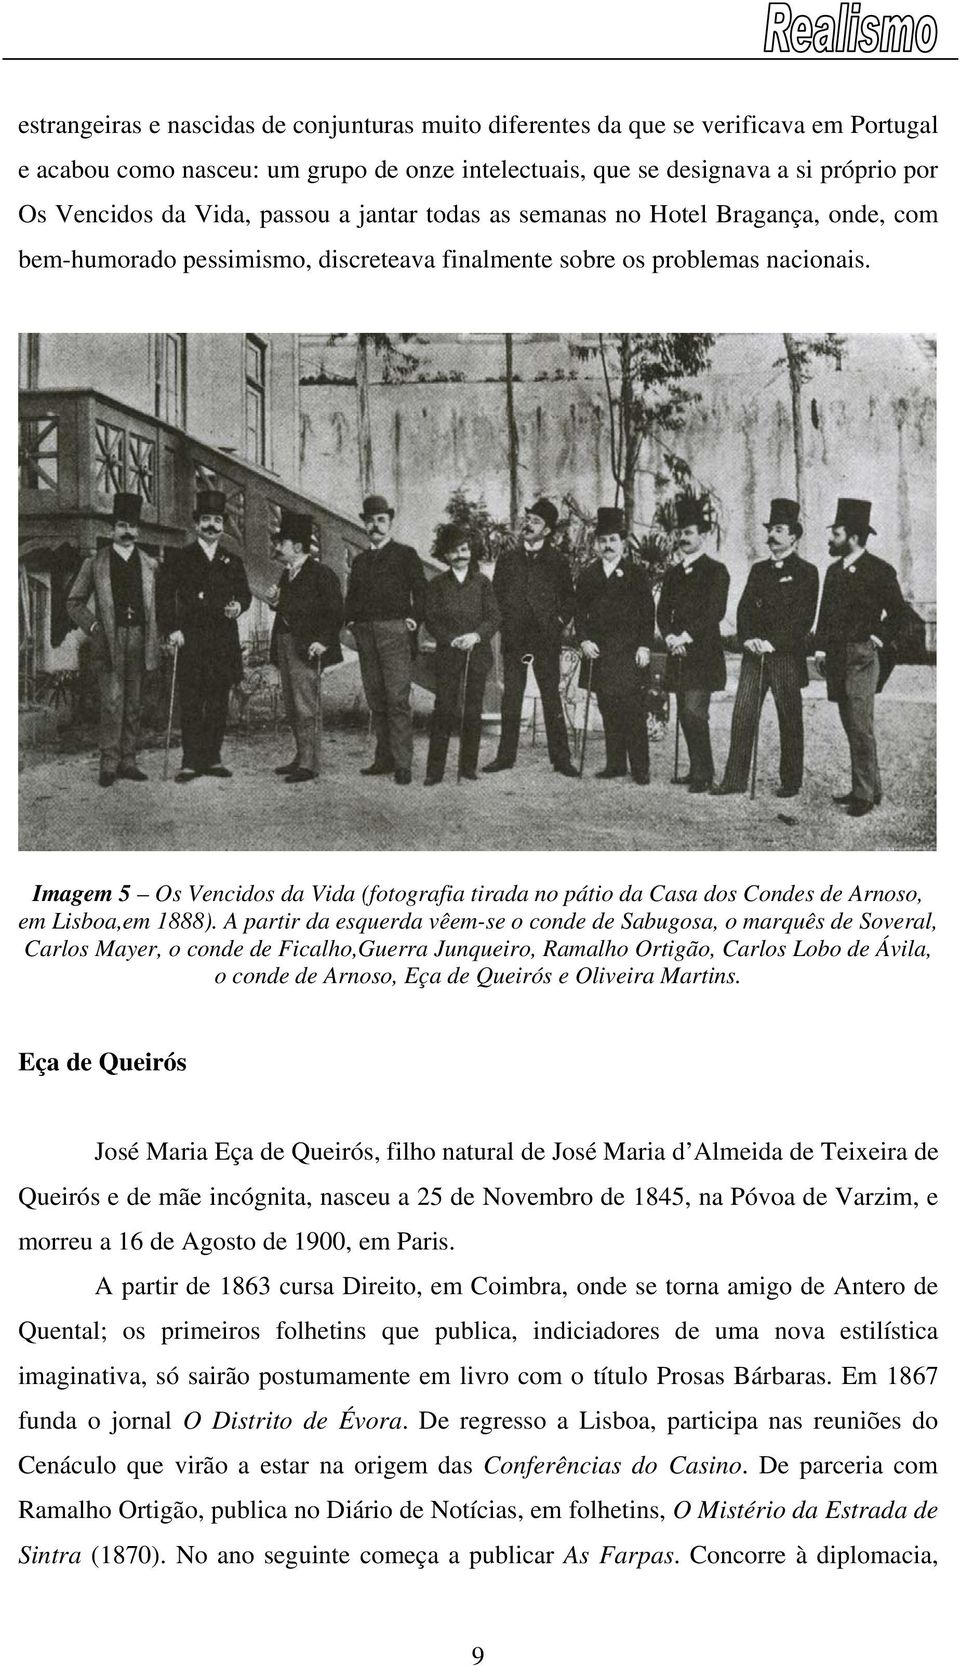 Imagem 5 Os Vencidos da Vida (fotografia tirada no pátio da Casa dos Condes de Arnoso, em Lisboa,em 1888).